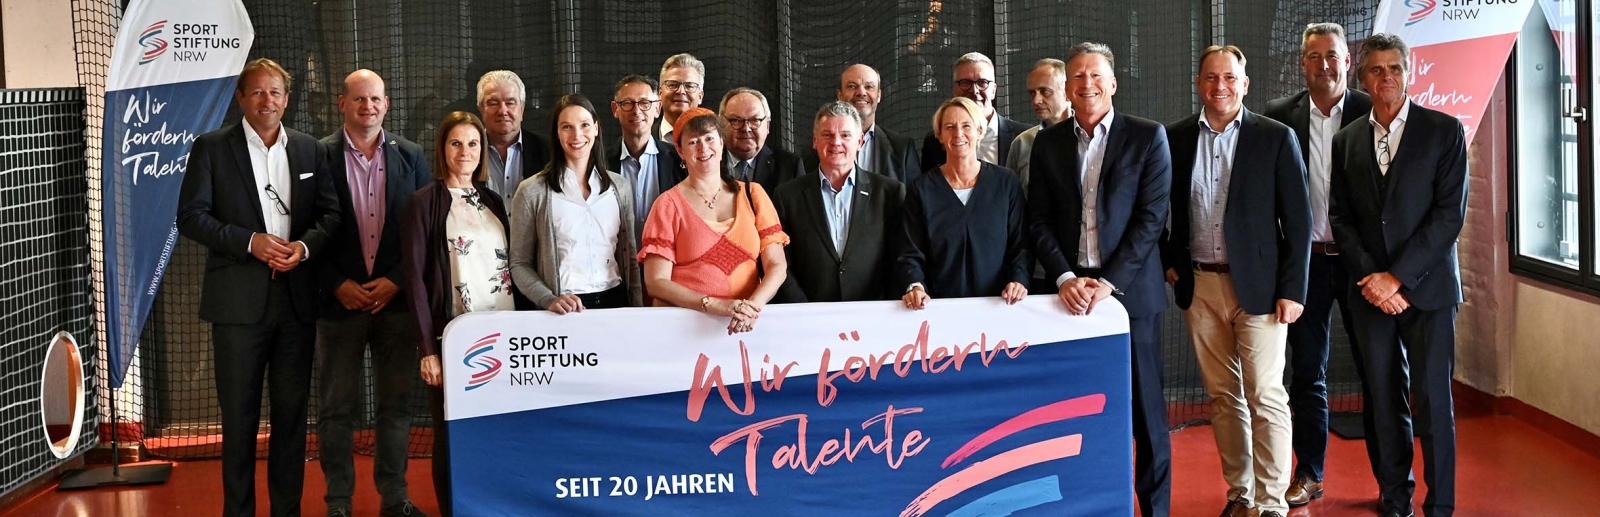 Gruppenfoto von der Kuratoriumssitzung der Sportstiftung NRW.